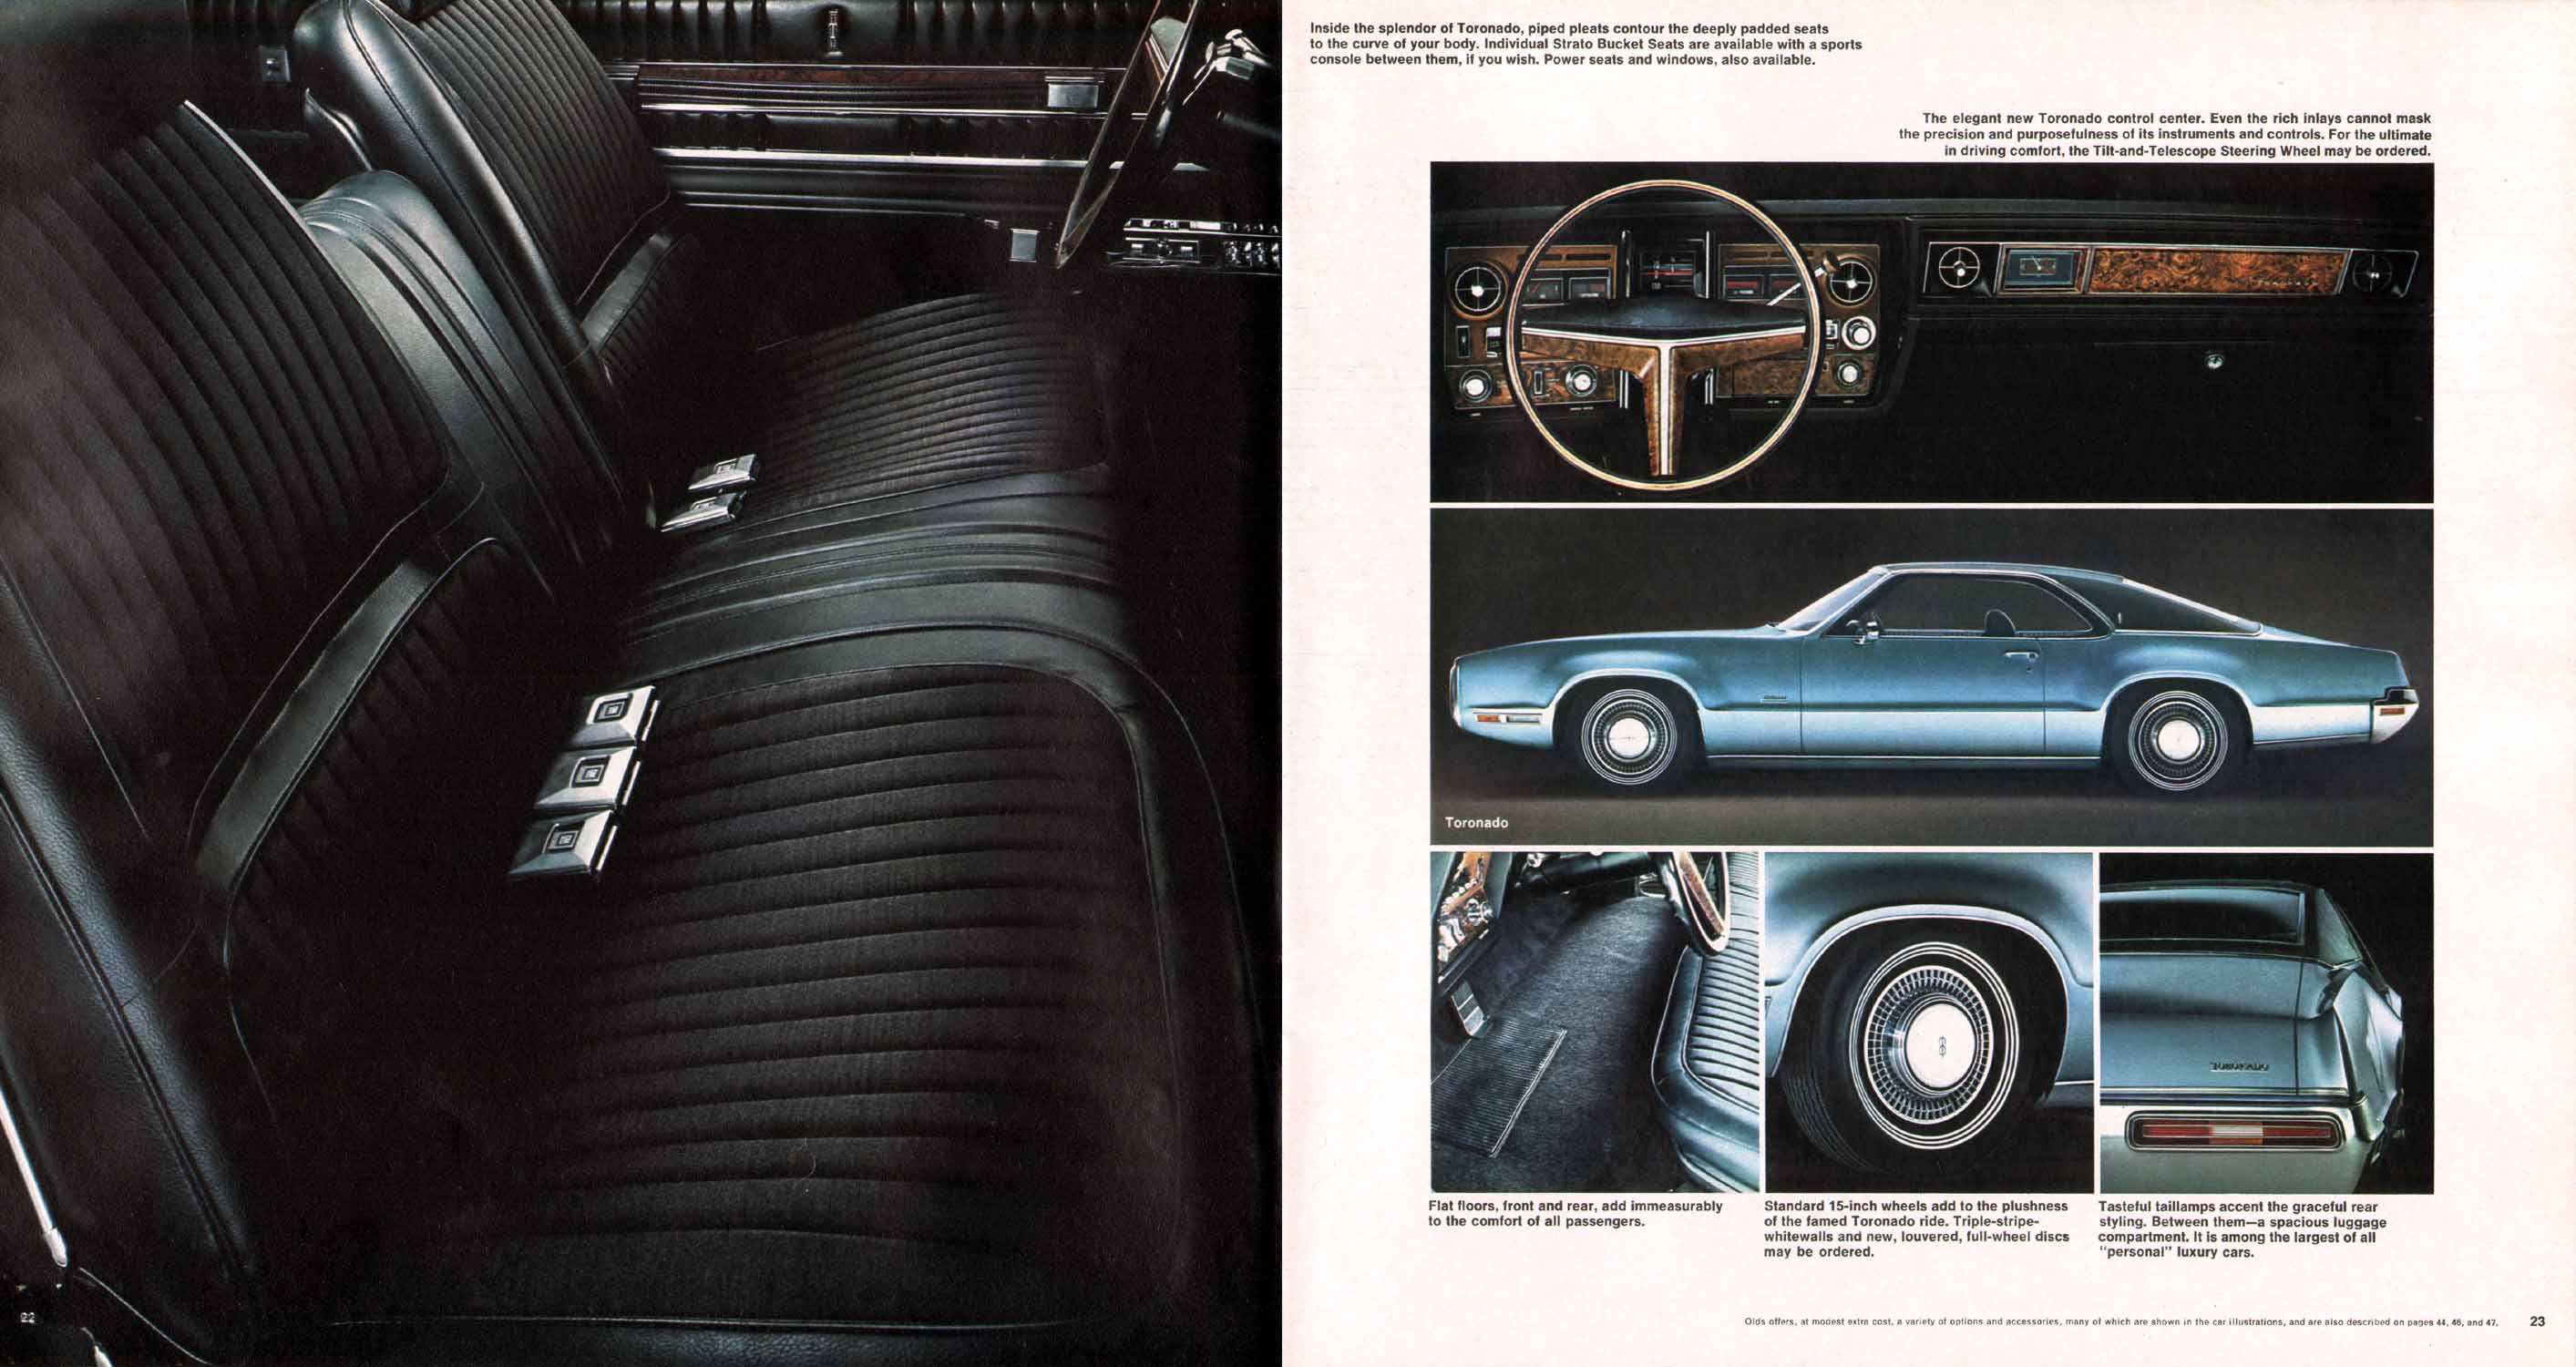 1970_Oldsmobile_Full_Line_Prestige_08-69-22-23